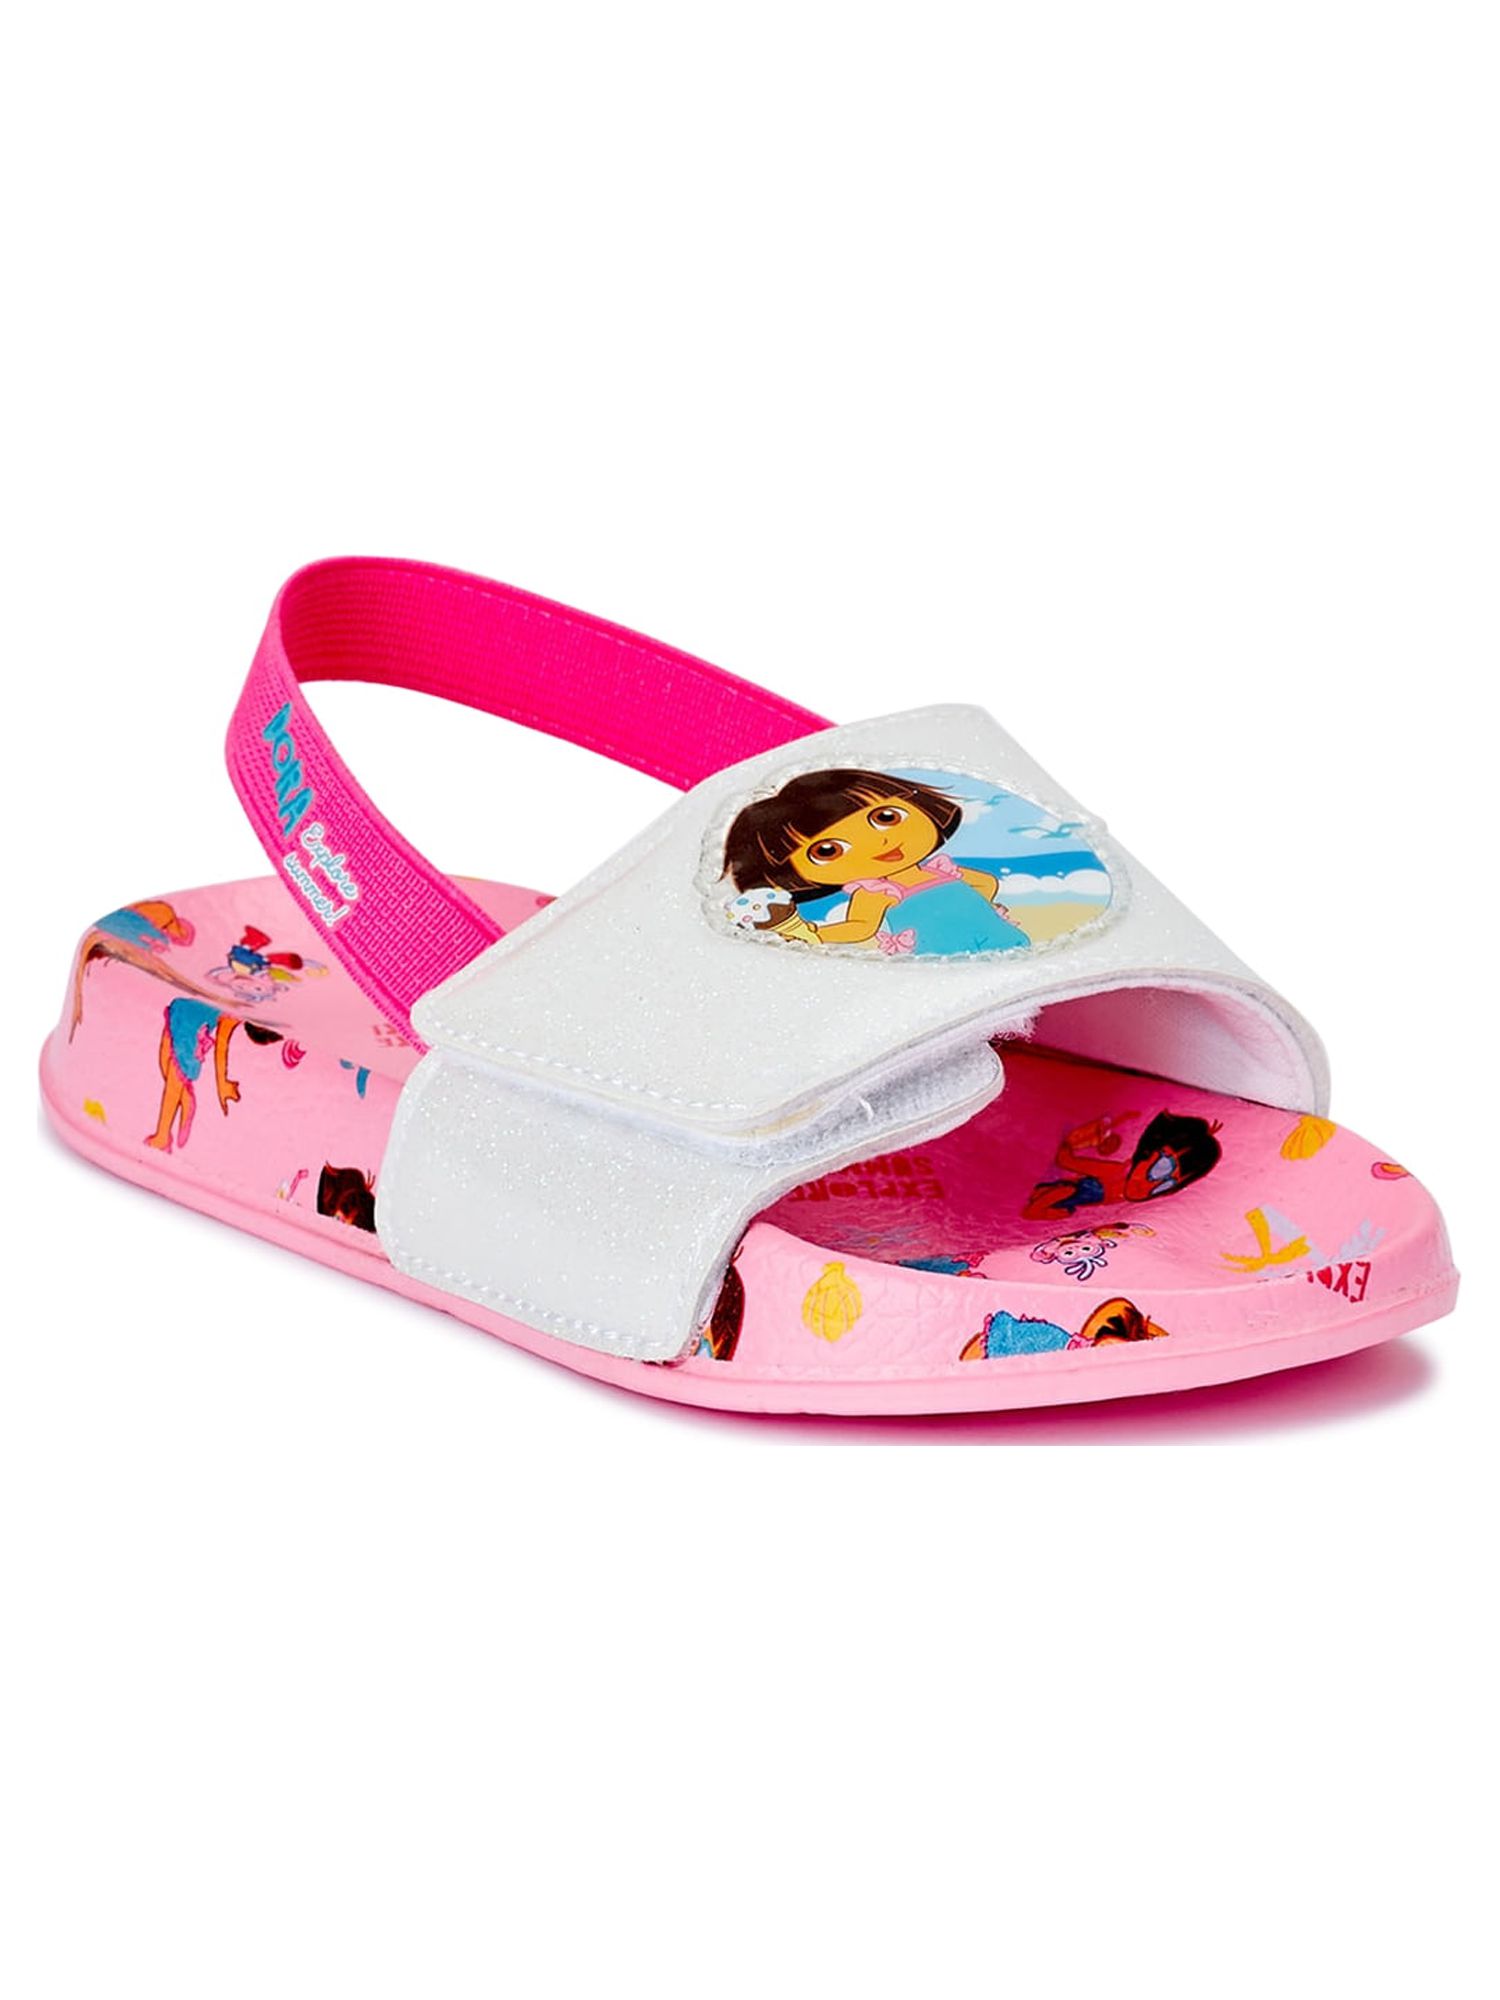 Dora the Explorer Toddler Girls' Beach Slide Sandals - image 1 of 6